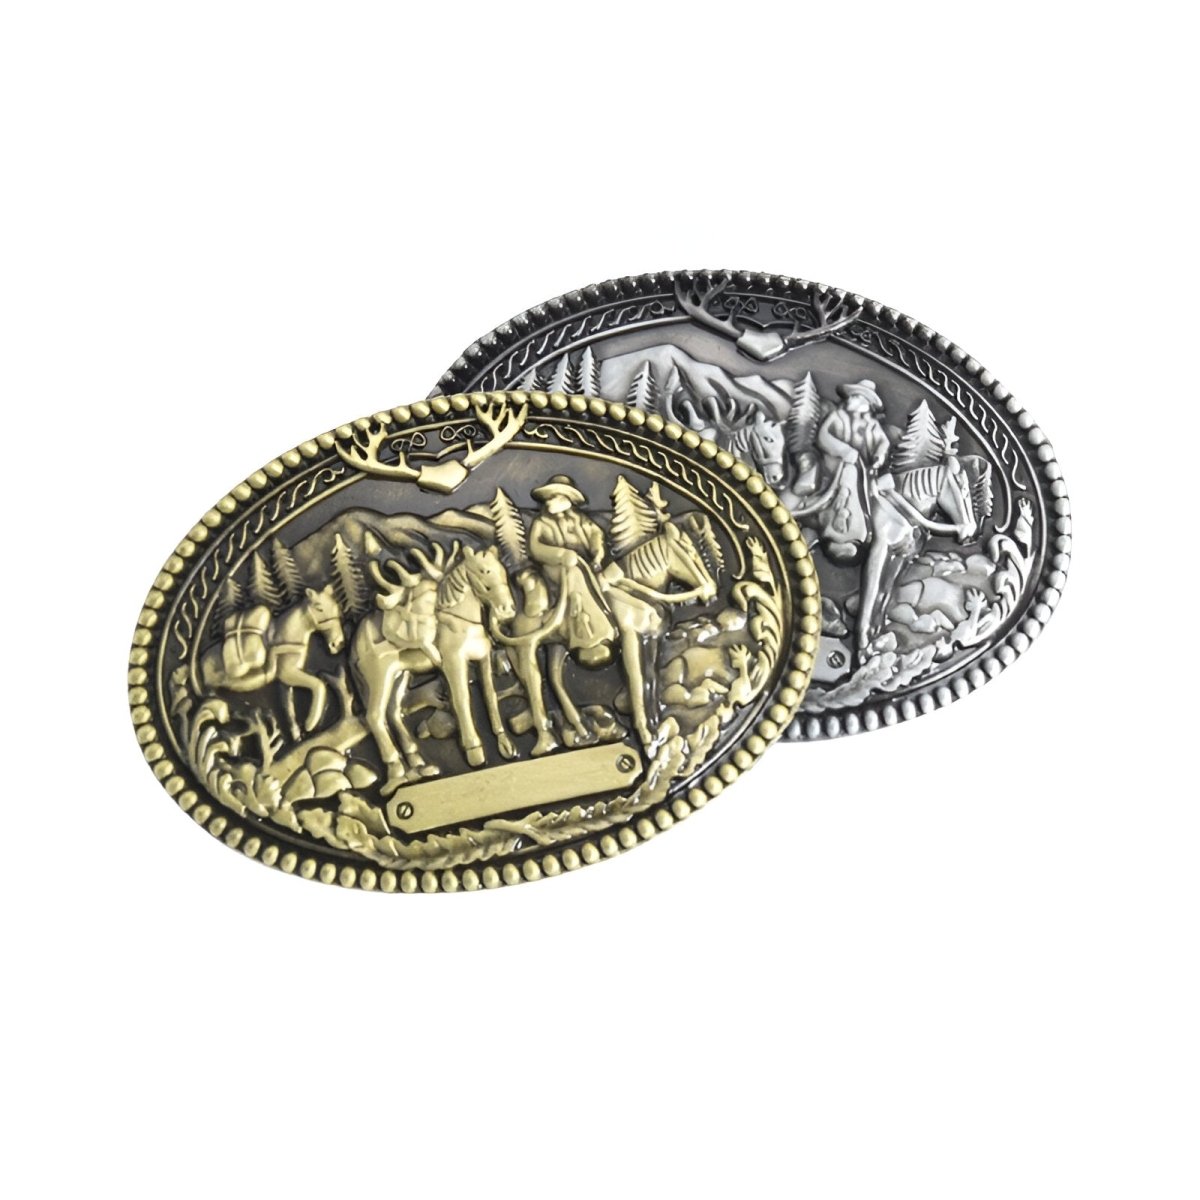 Boucle de ceinture Western, cowboy avec chevaux, modèle Cletus - La Boutique de la Ceinture